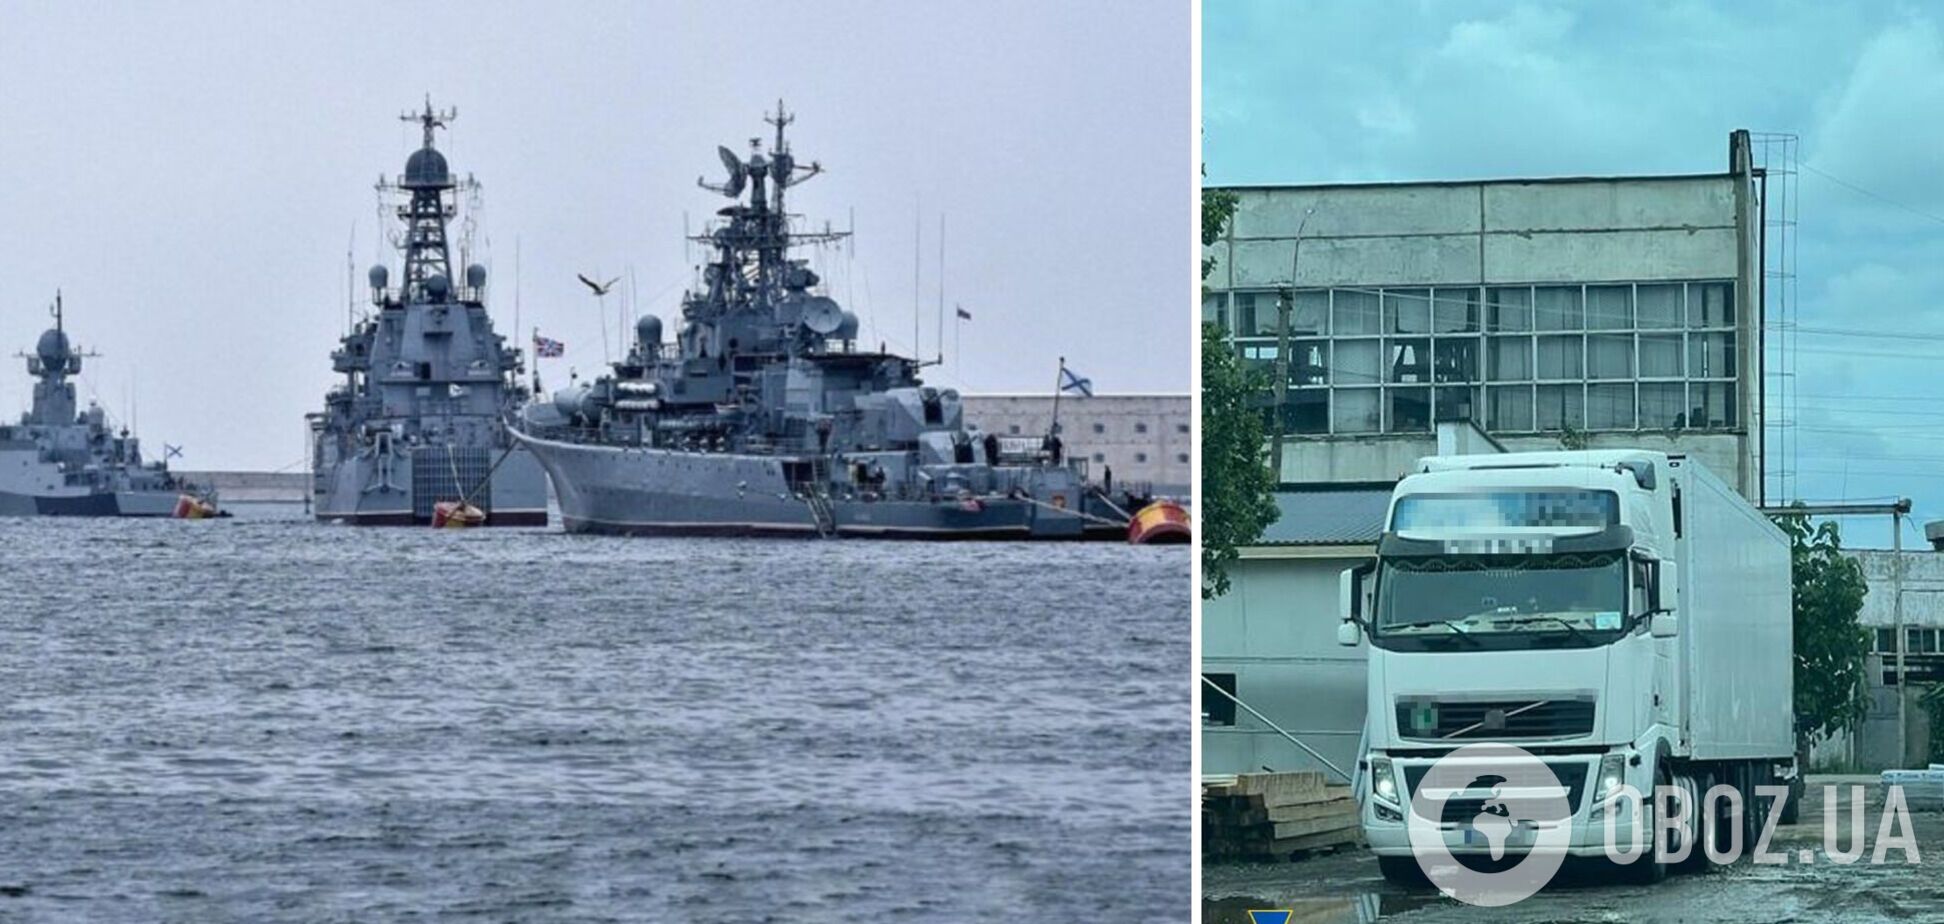 Допомагав Росії виробляти РЛС для військових кораблів: СБУ викрила й затримала закарпатського підприємця-зрадника. Фото